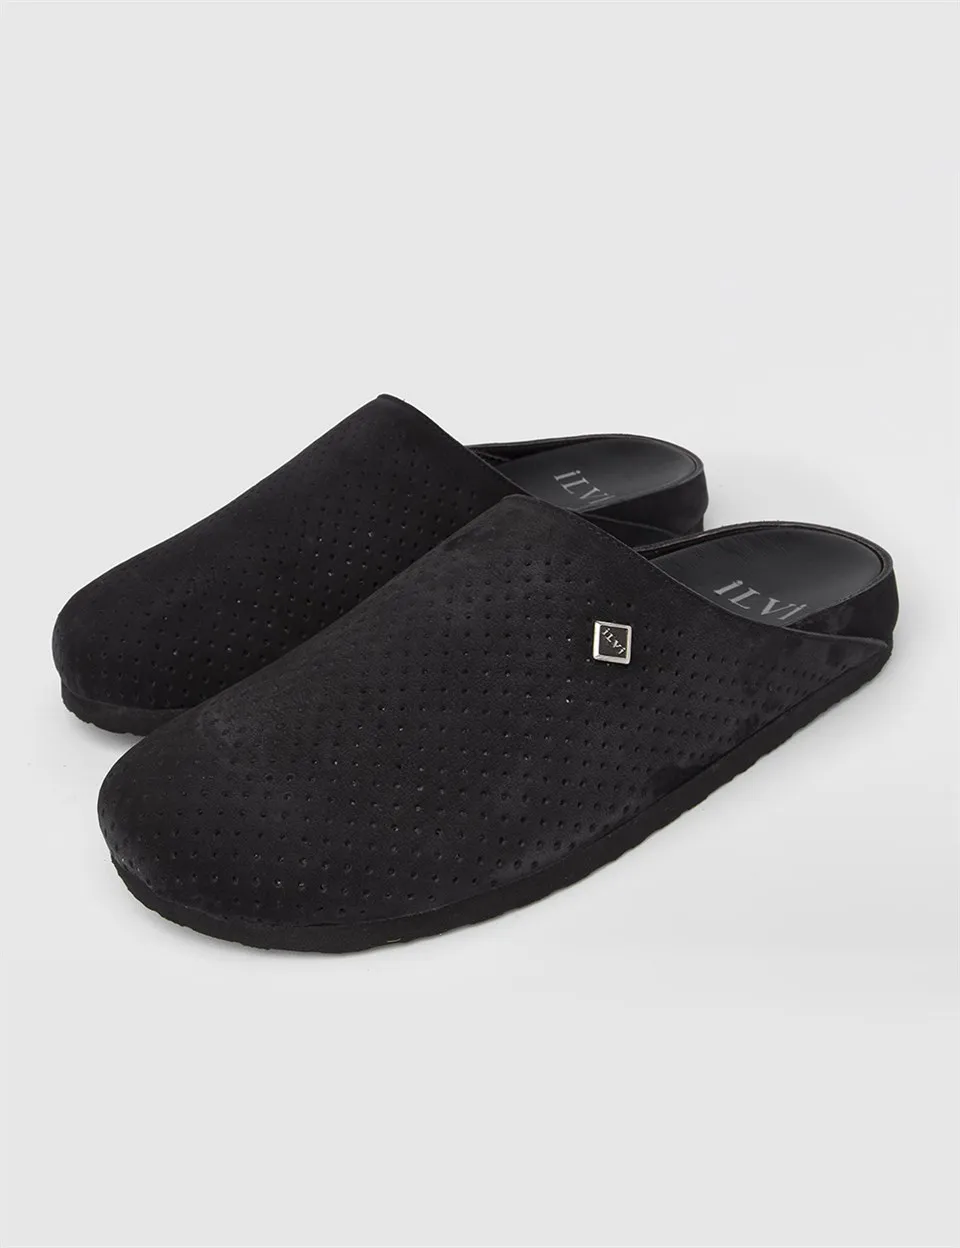 

ILVi-Genuine Leather Handmade Boras Black Nubuck Men's Slipper Men Shoes 2022 Spring/Summer